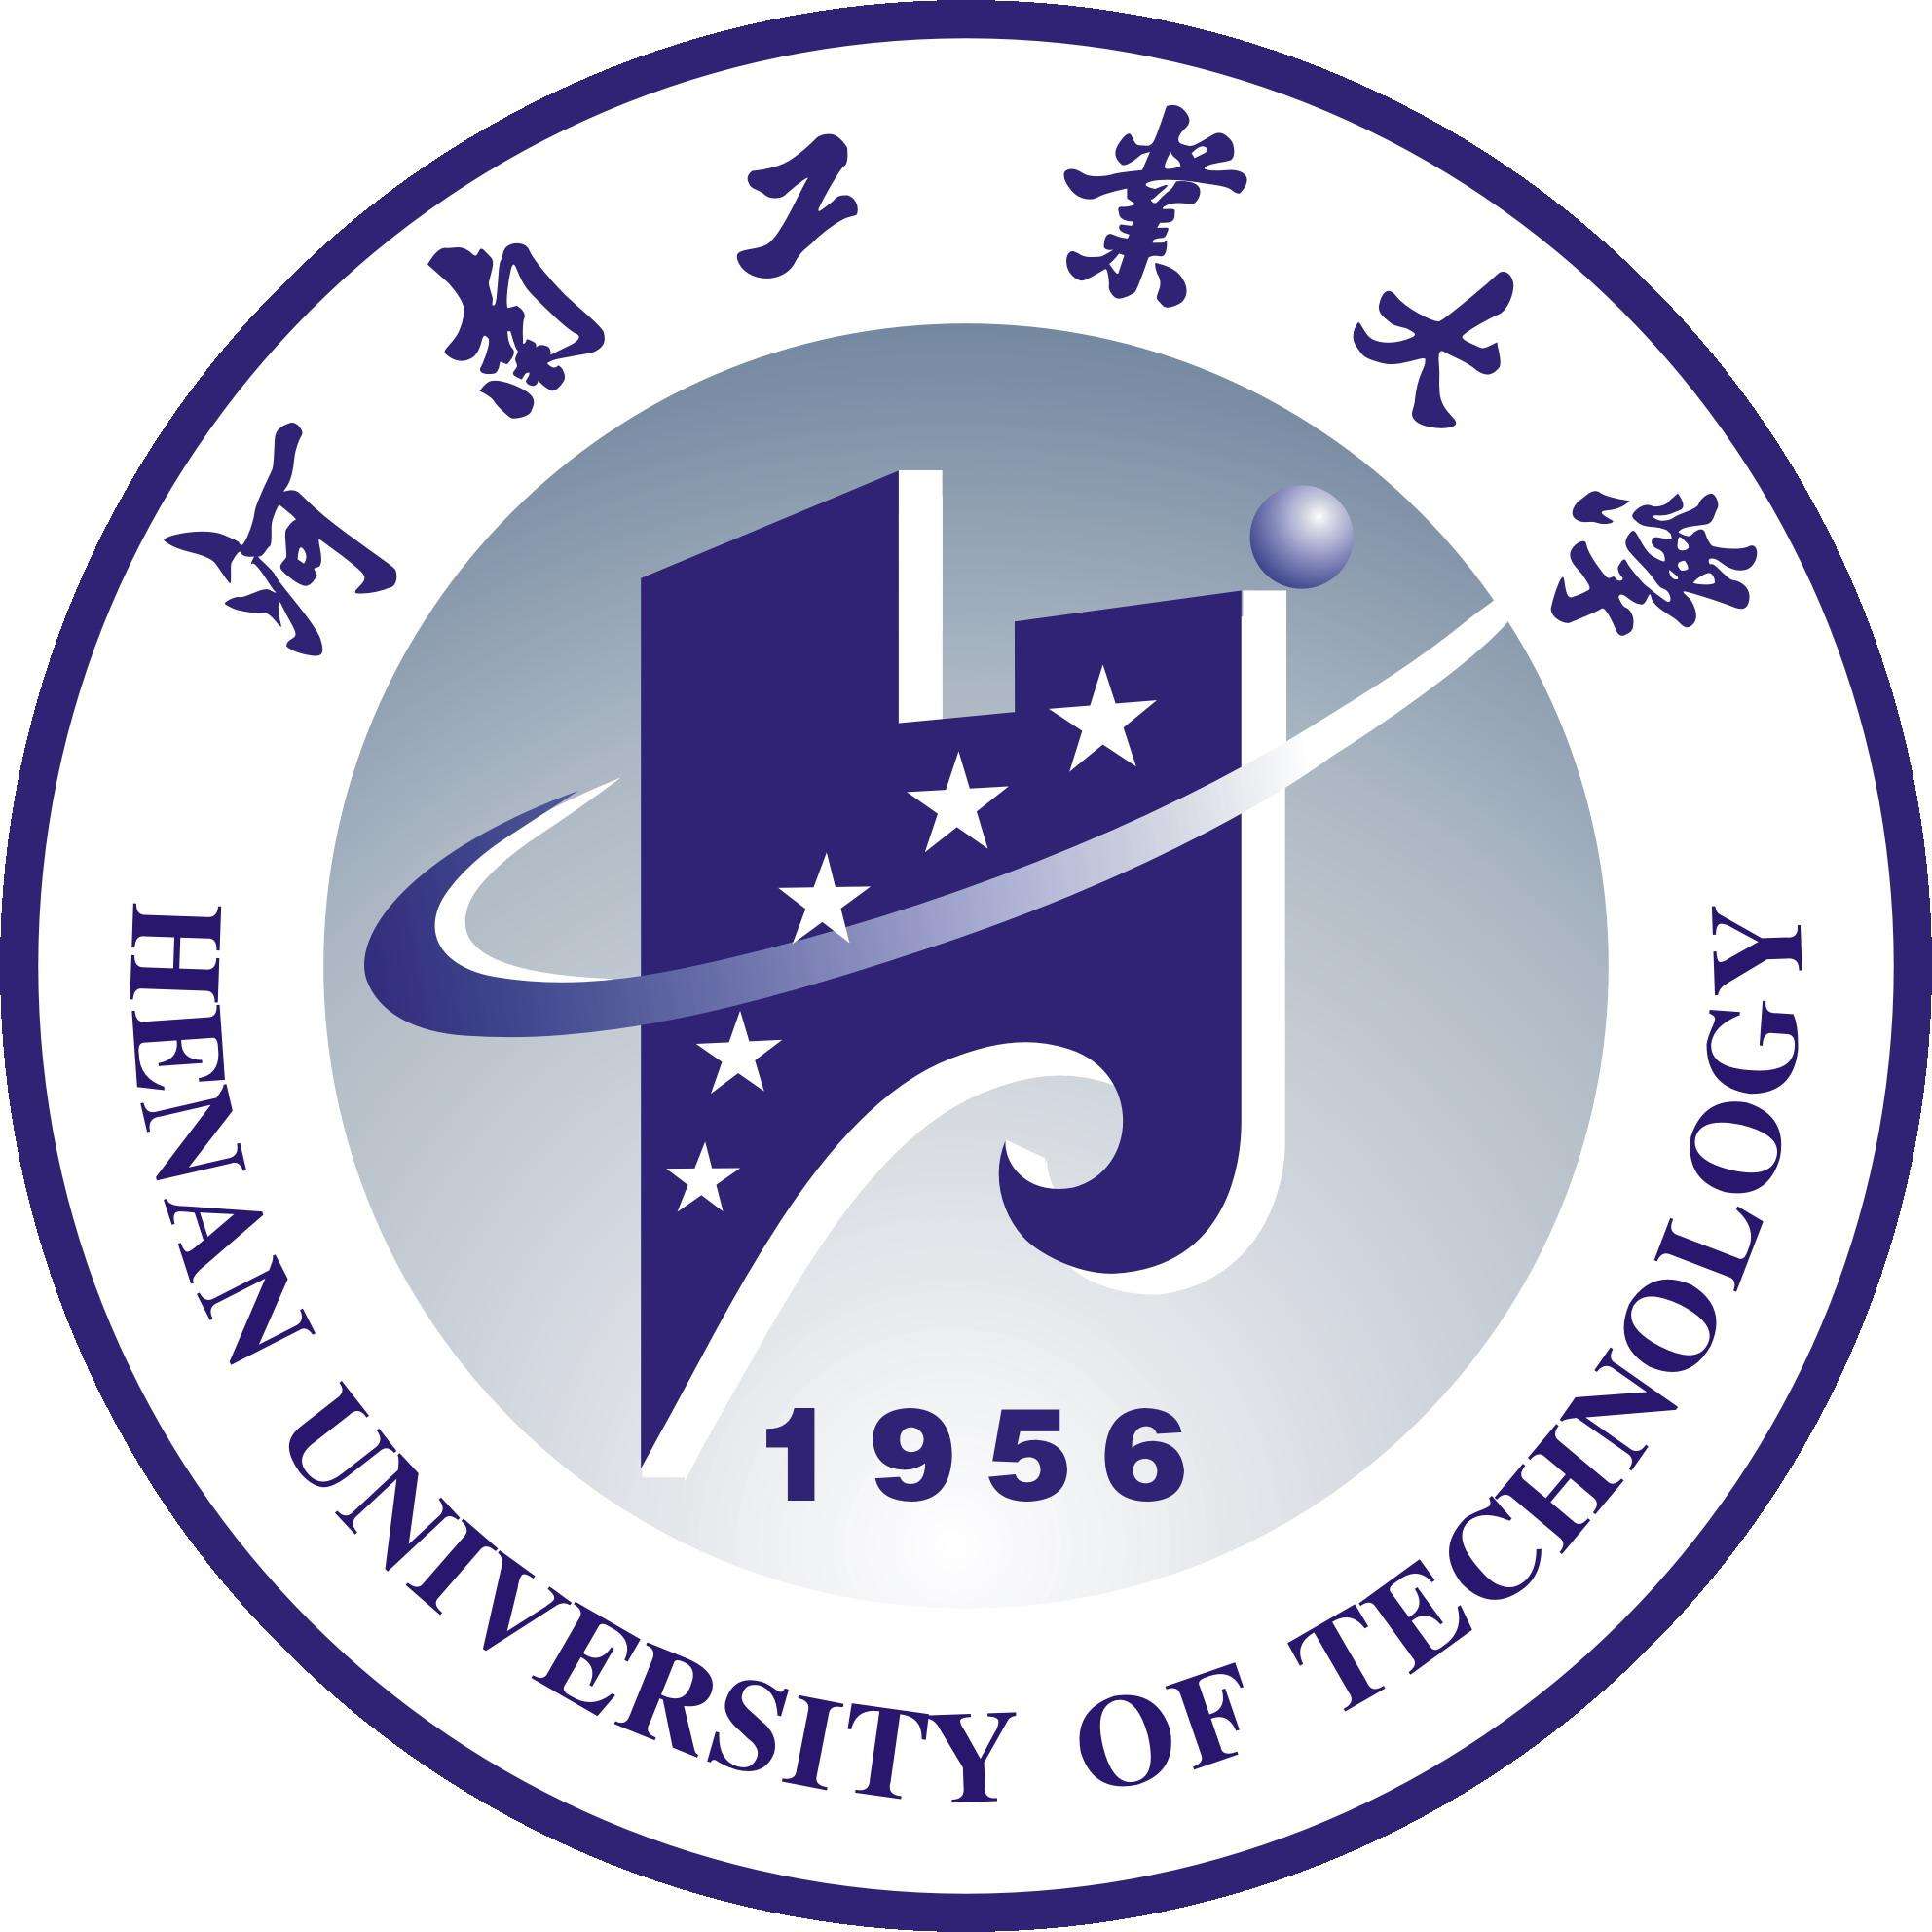 河南工业大学位于河南省会郑州市,是河南省人民政府和国家粮食局共建